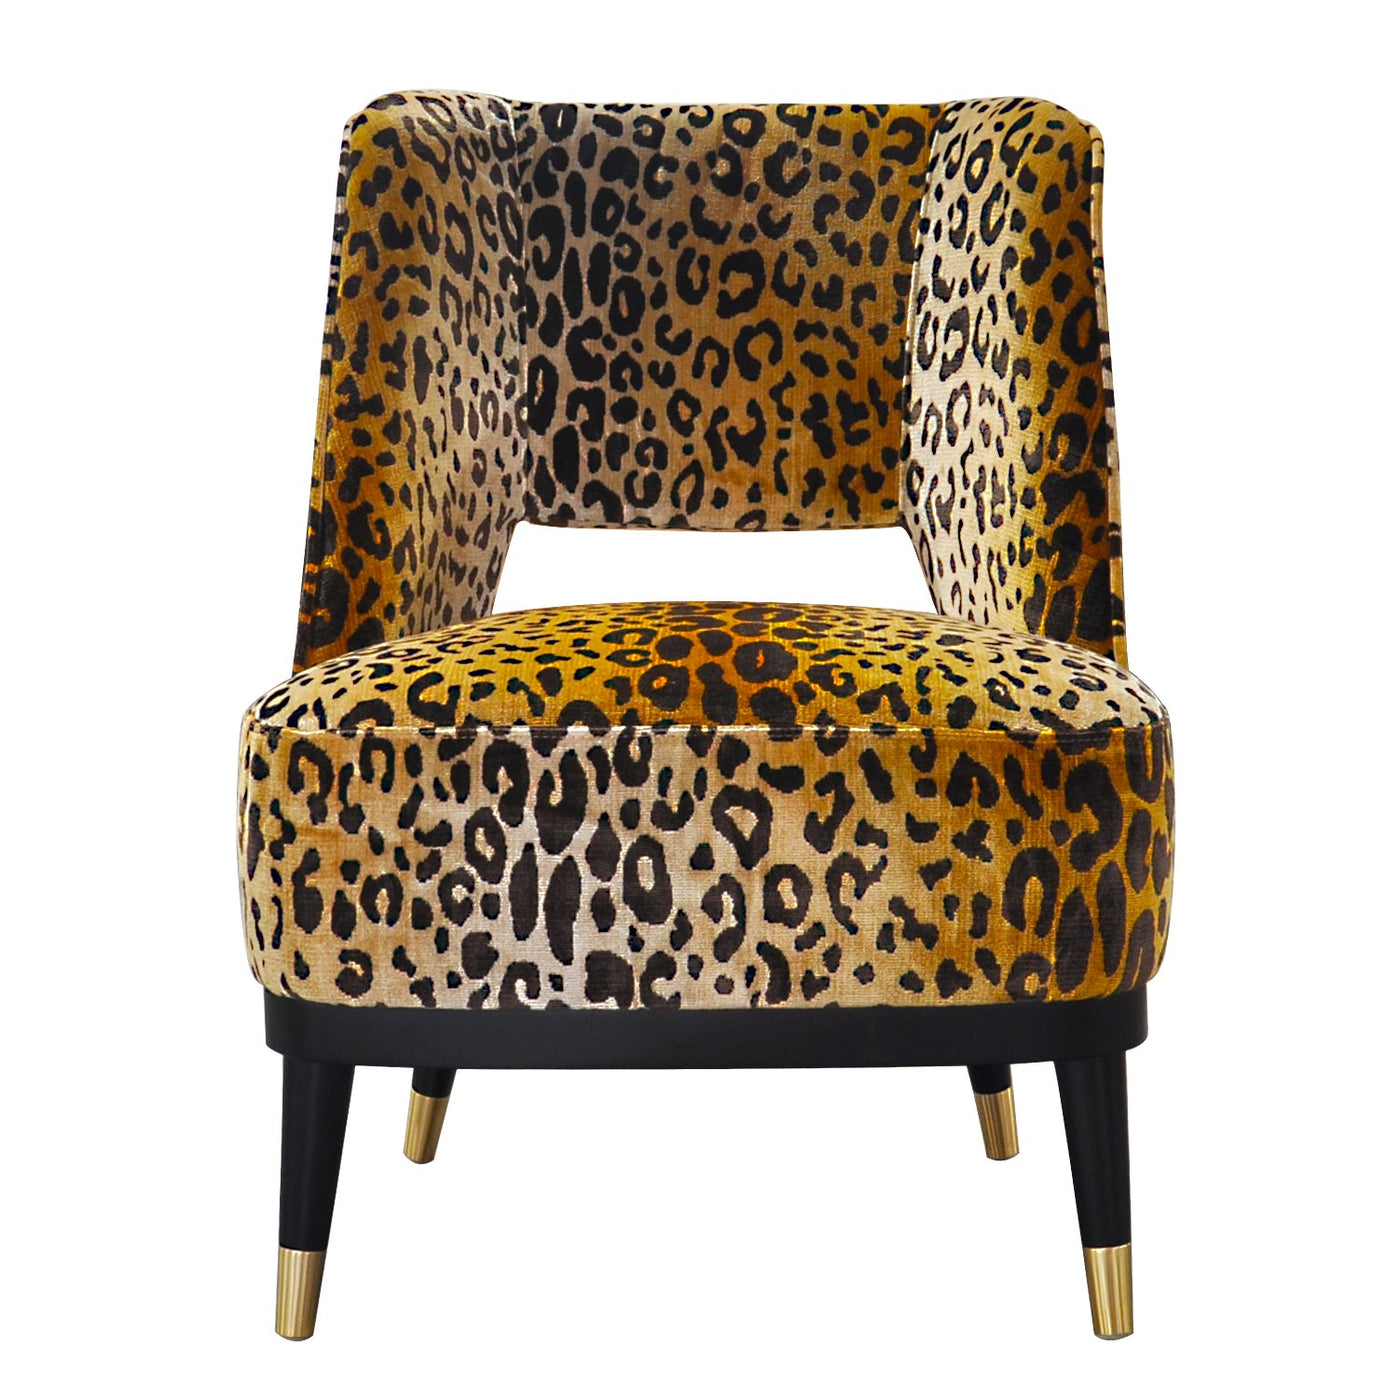 Ingwe Chair - Future Classics Furniture